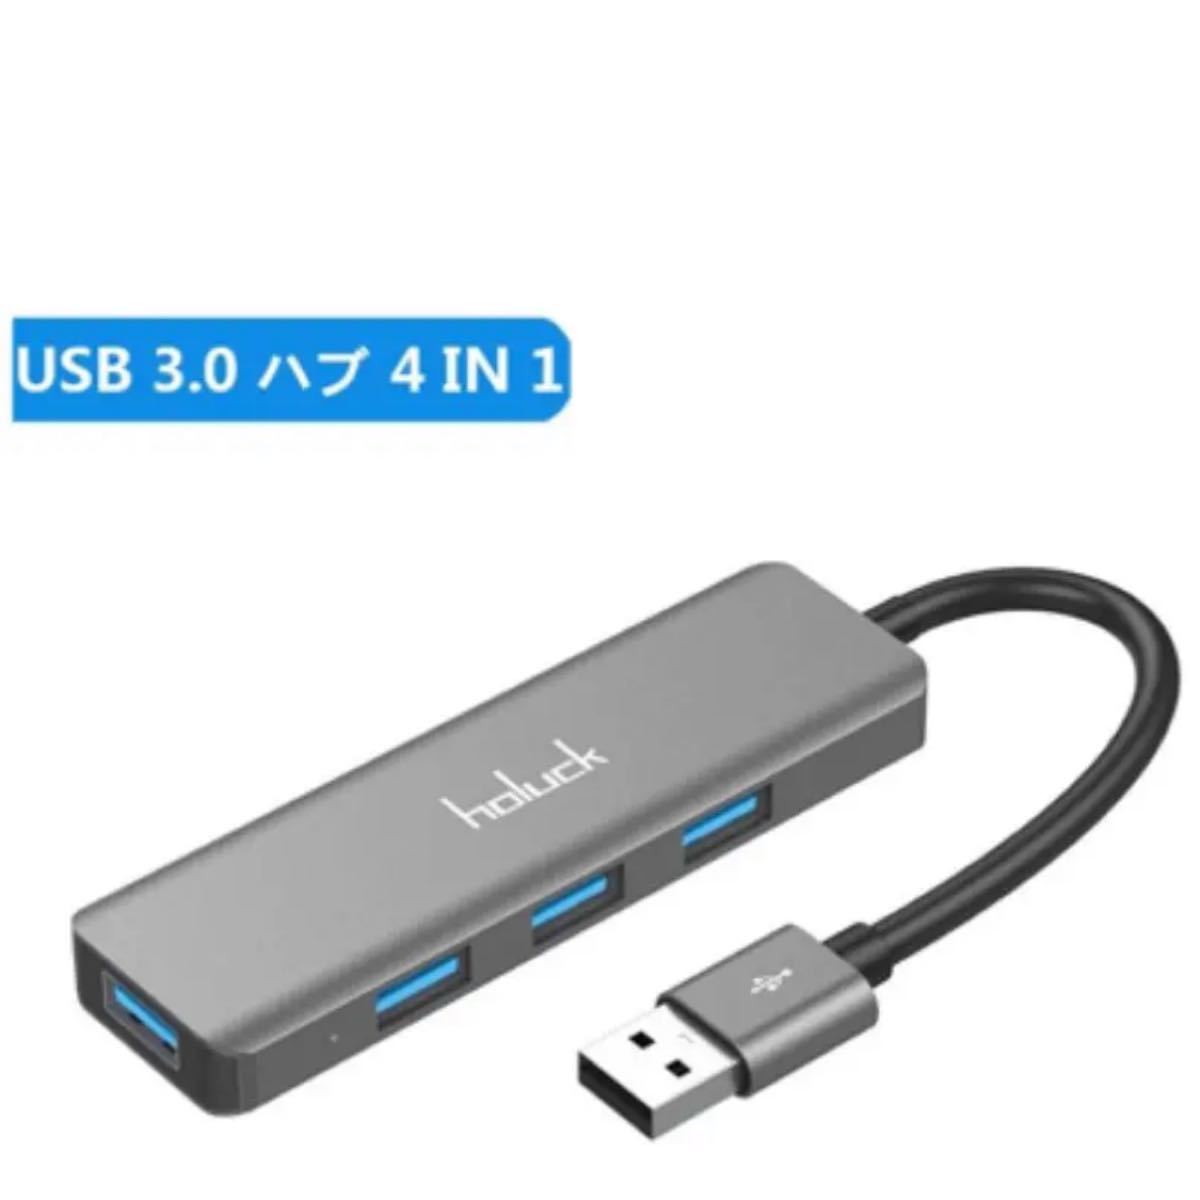 USB 3.0 ハブ USB HUB ウルトラスリムUSB 3.0 *4ポート 5Gbps 高速 ハブ バスパワー 軽量コンパクト